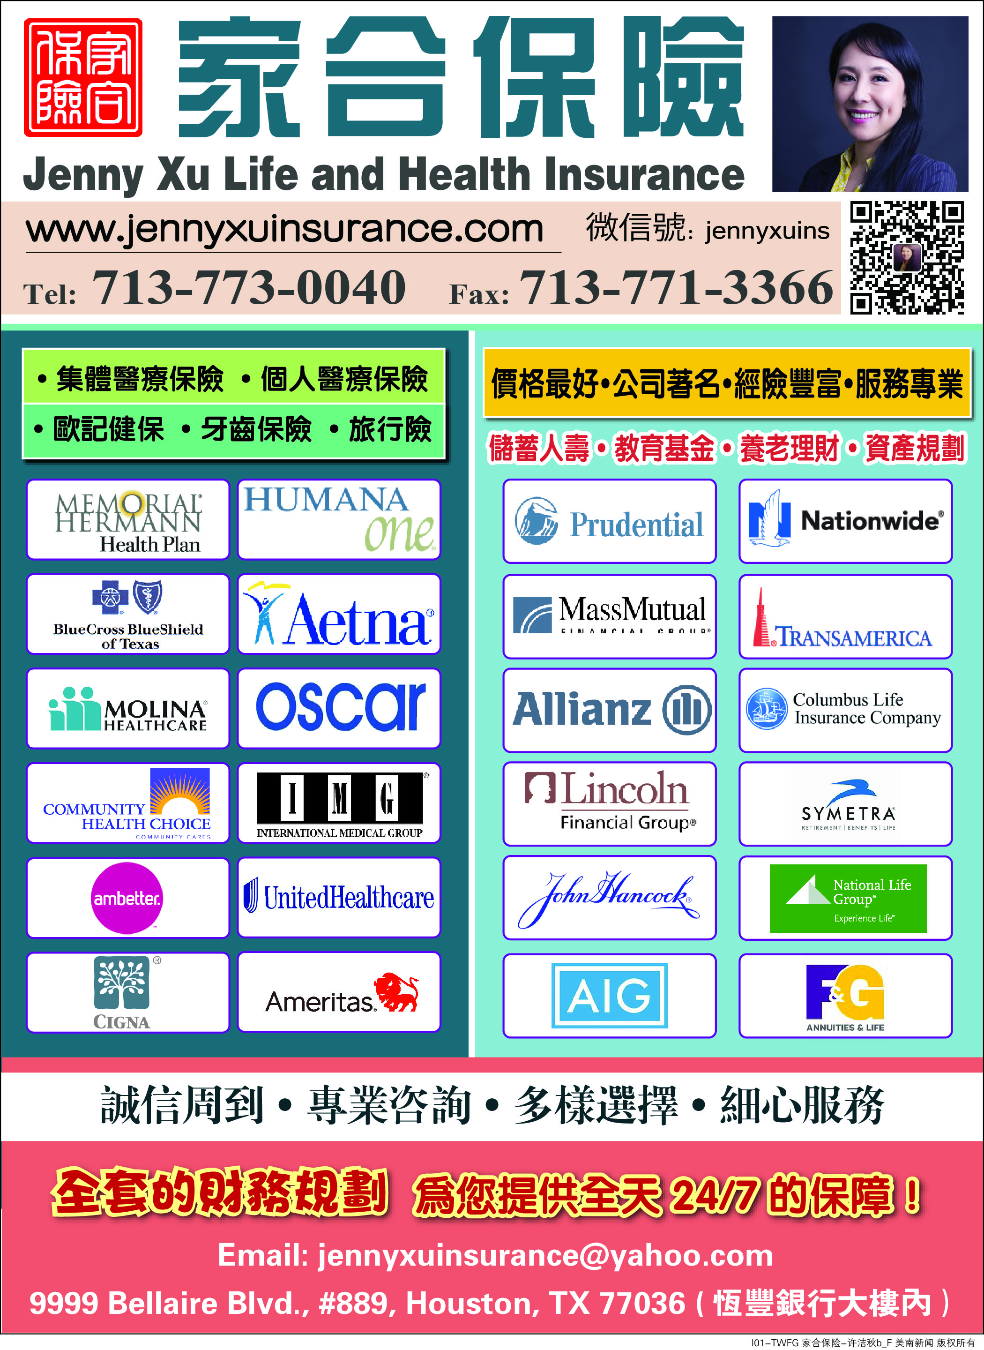 Jenny Xu Life and Health Insurance - 家合保險 許潔秋